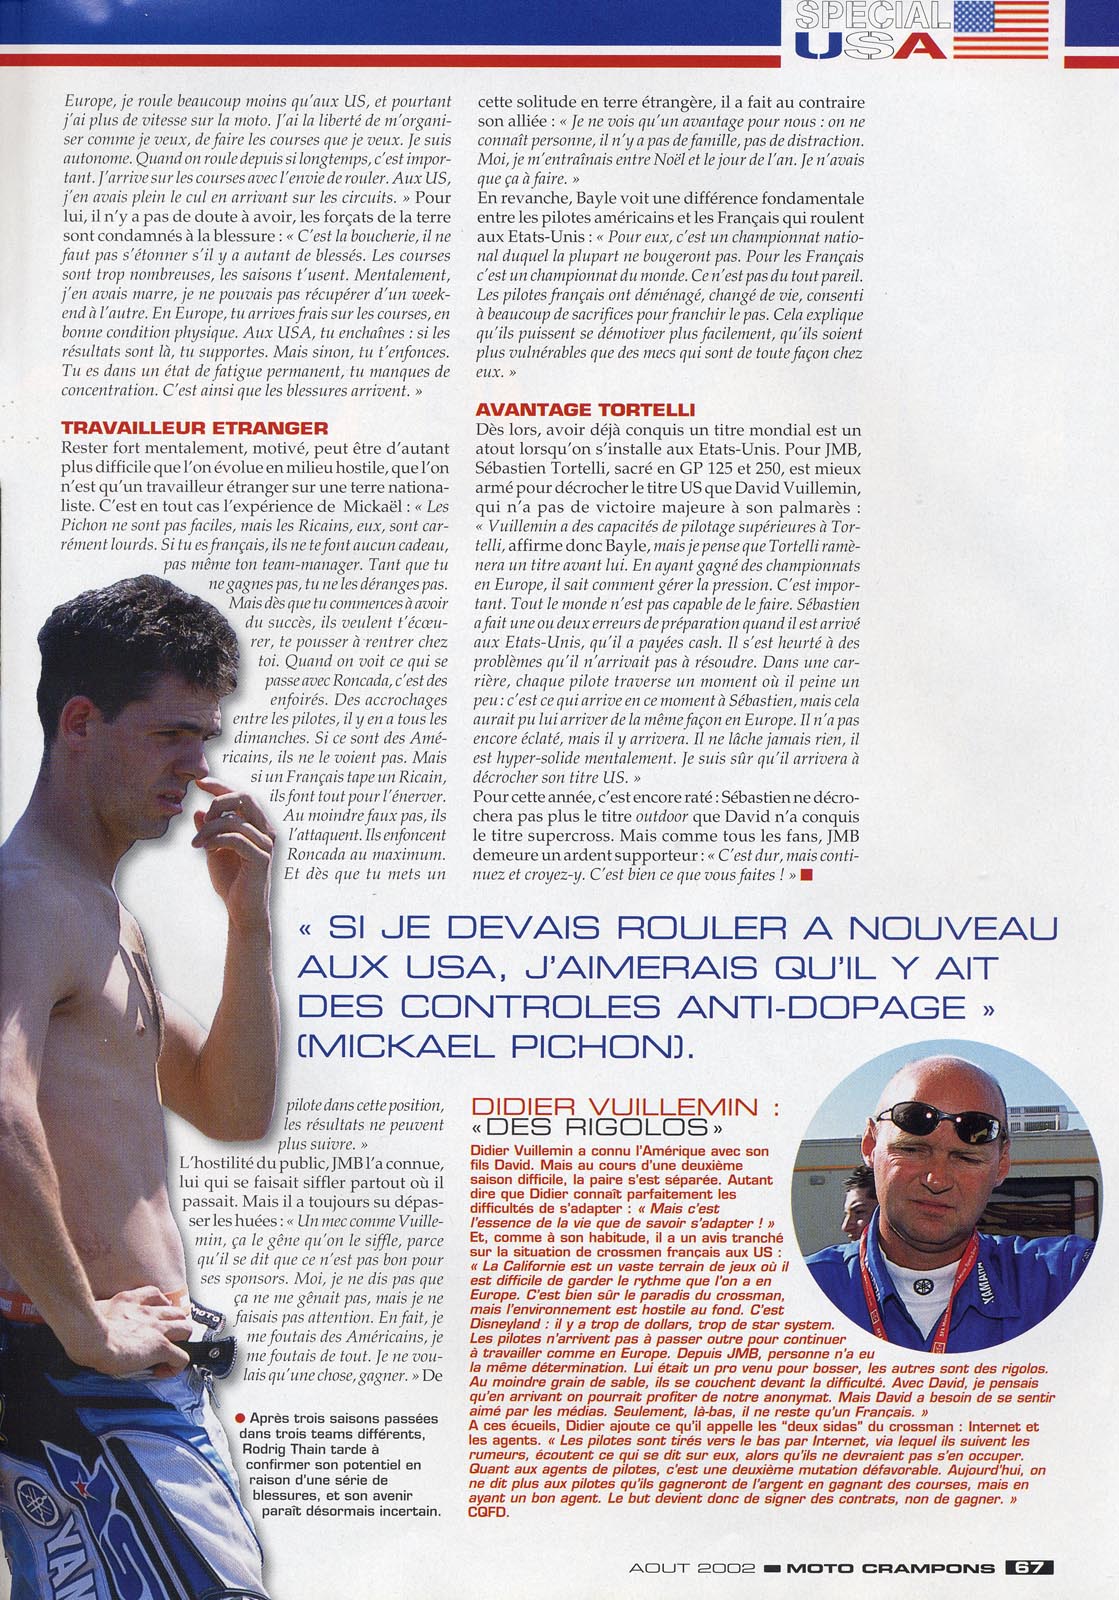 La page 67 du Moto Crampons d'Août où est consacré un reportage sur la difficulté des français à s'imposer aux Etats-Unis